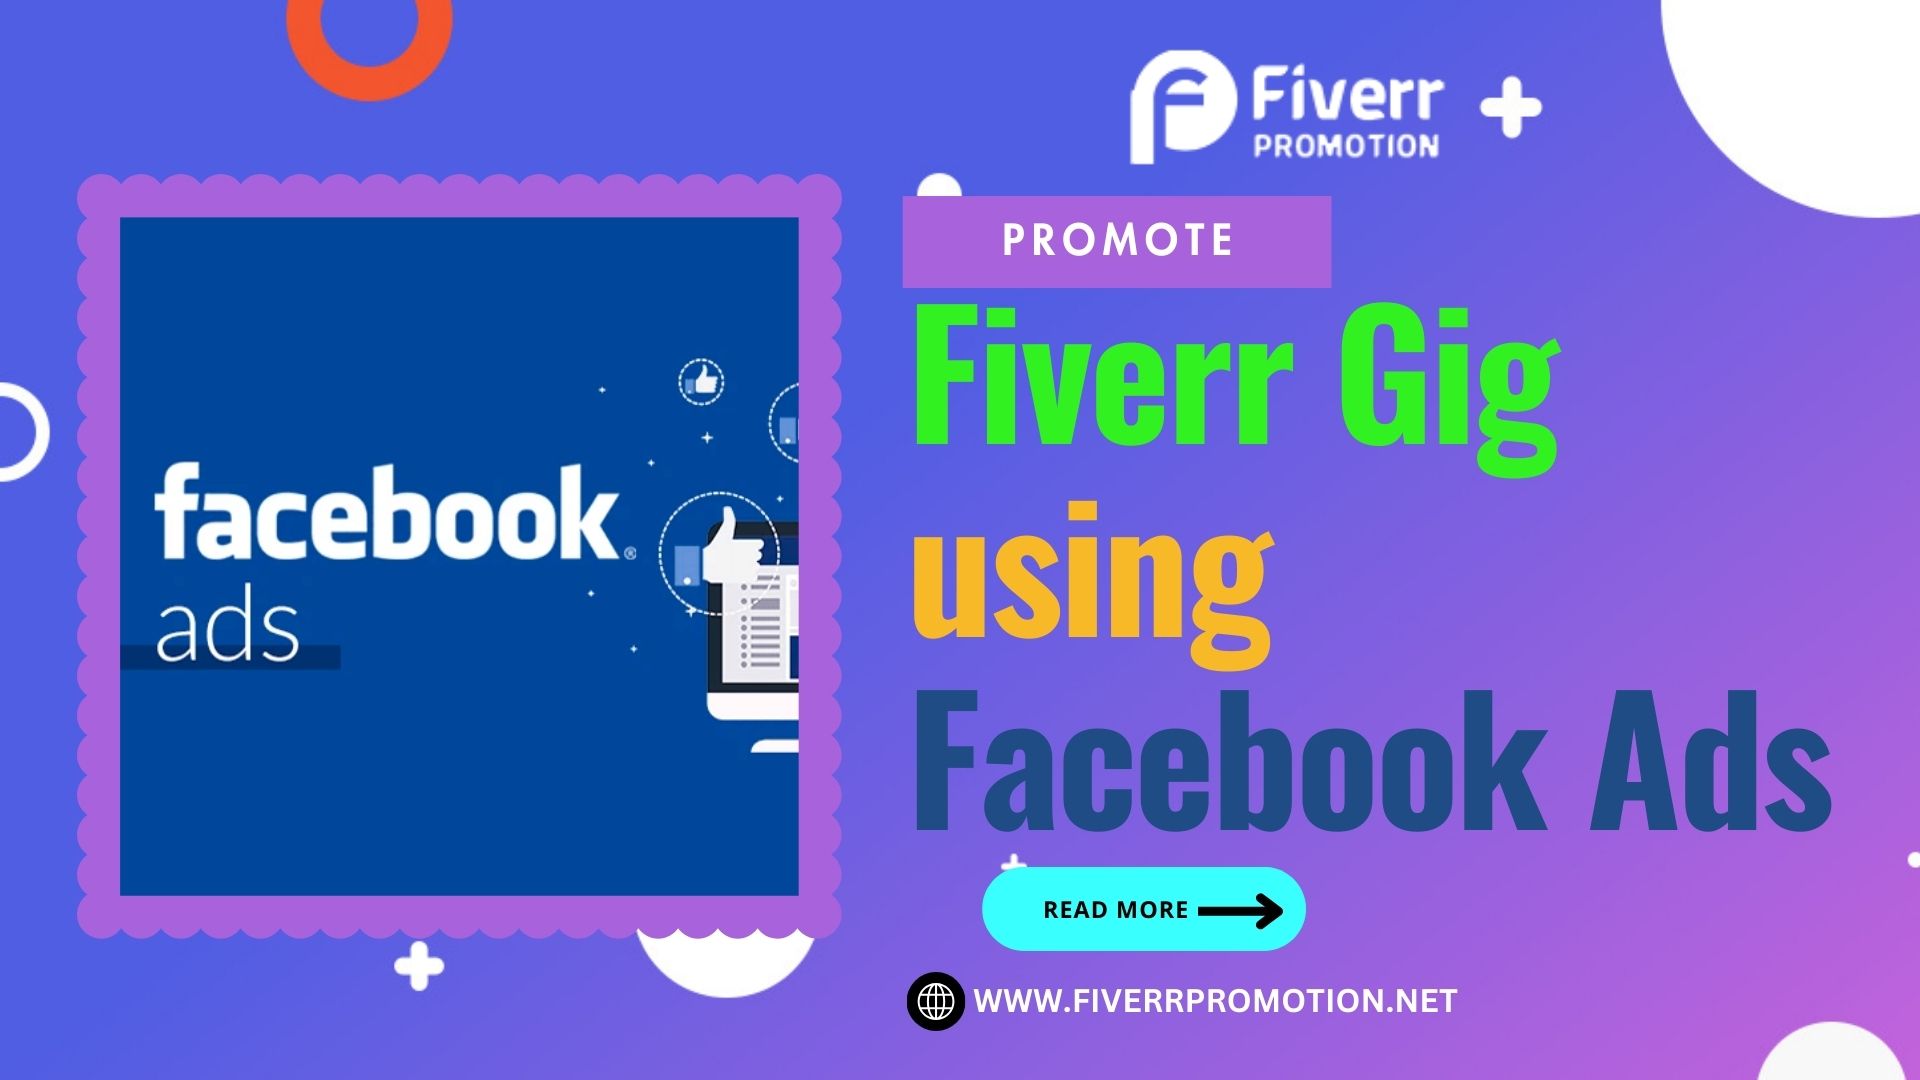 Promote Fiverr Gig using Facebook Ads